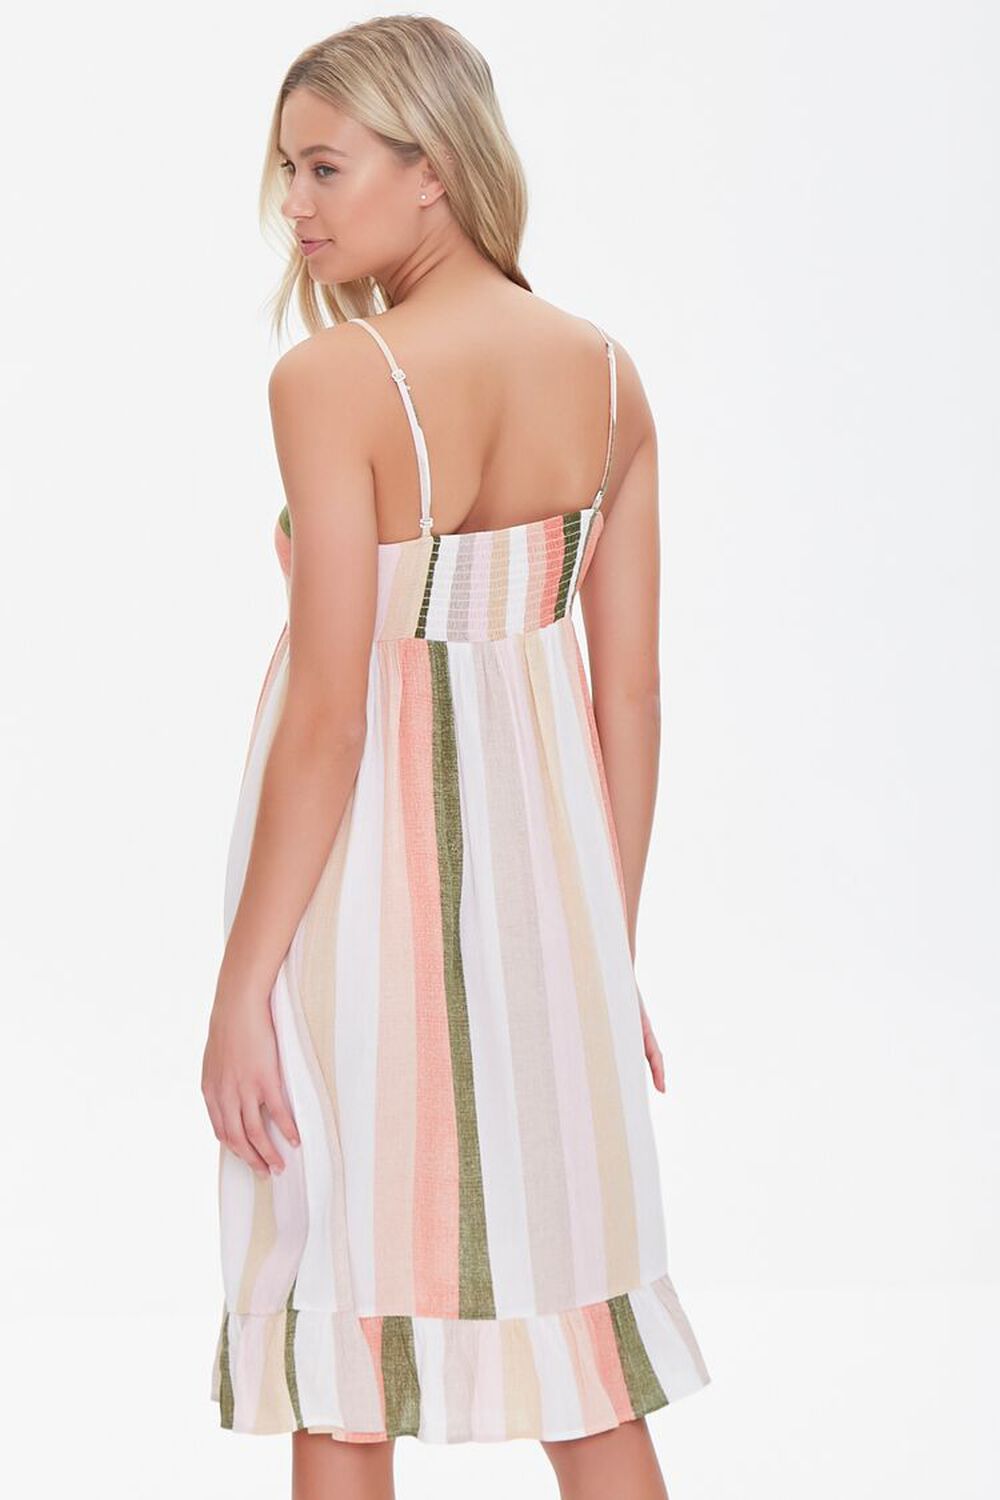 CREAM/MULTI Striped Cami Dress, image 3